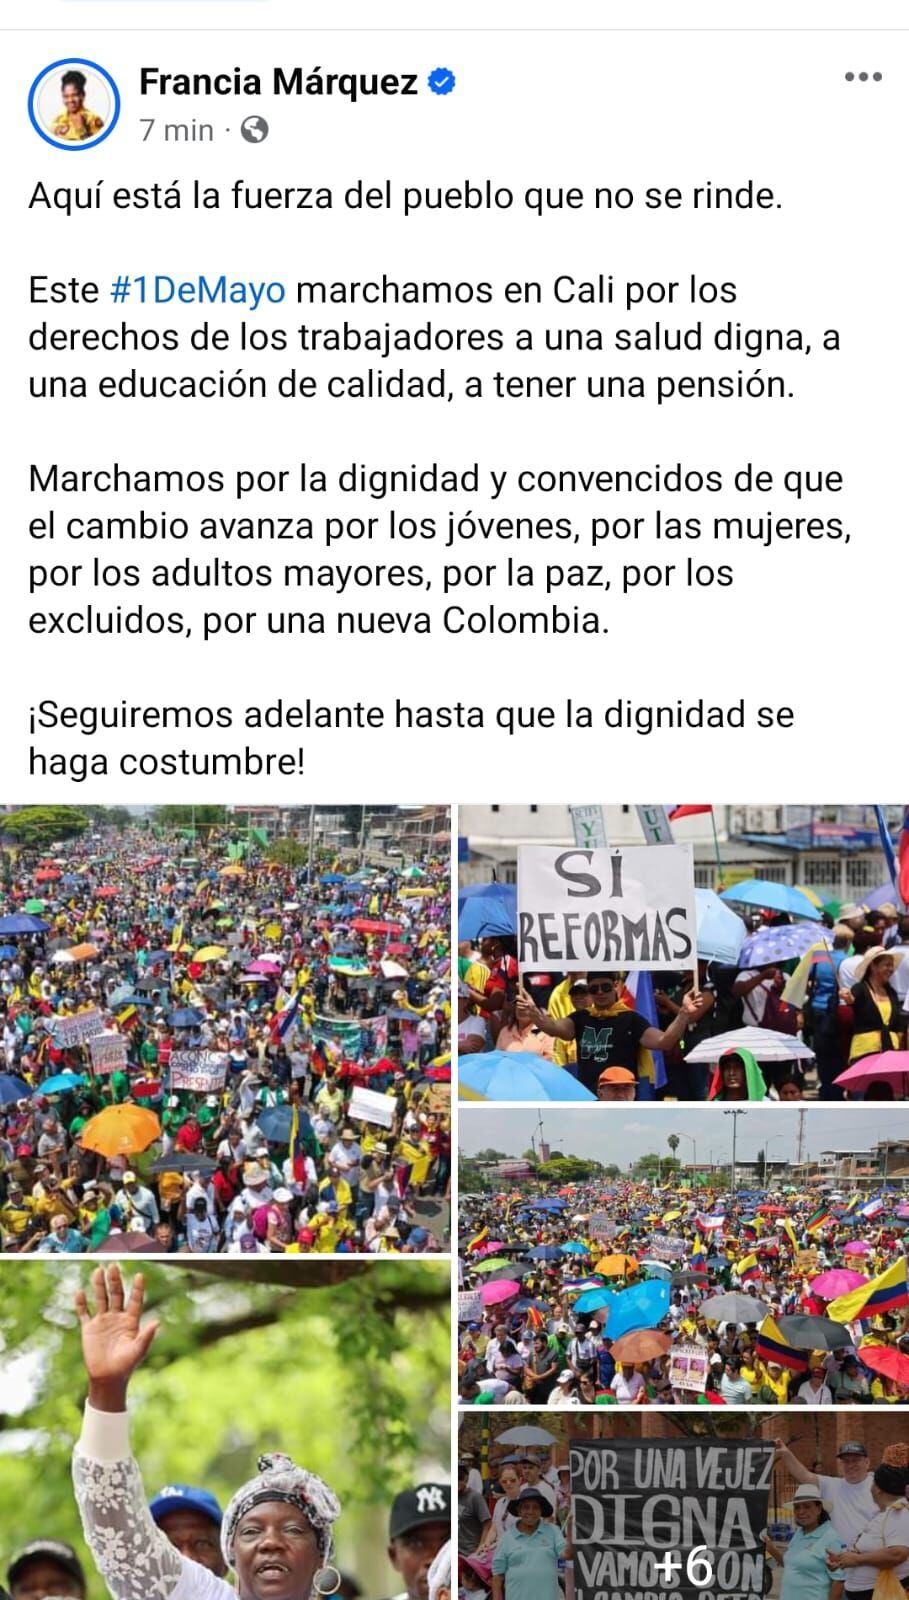 La vicepresidente acompañó las movilizaciones en Cali - crédito FranciaMárquez/Facebook